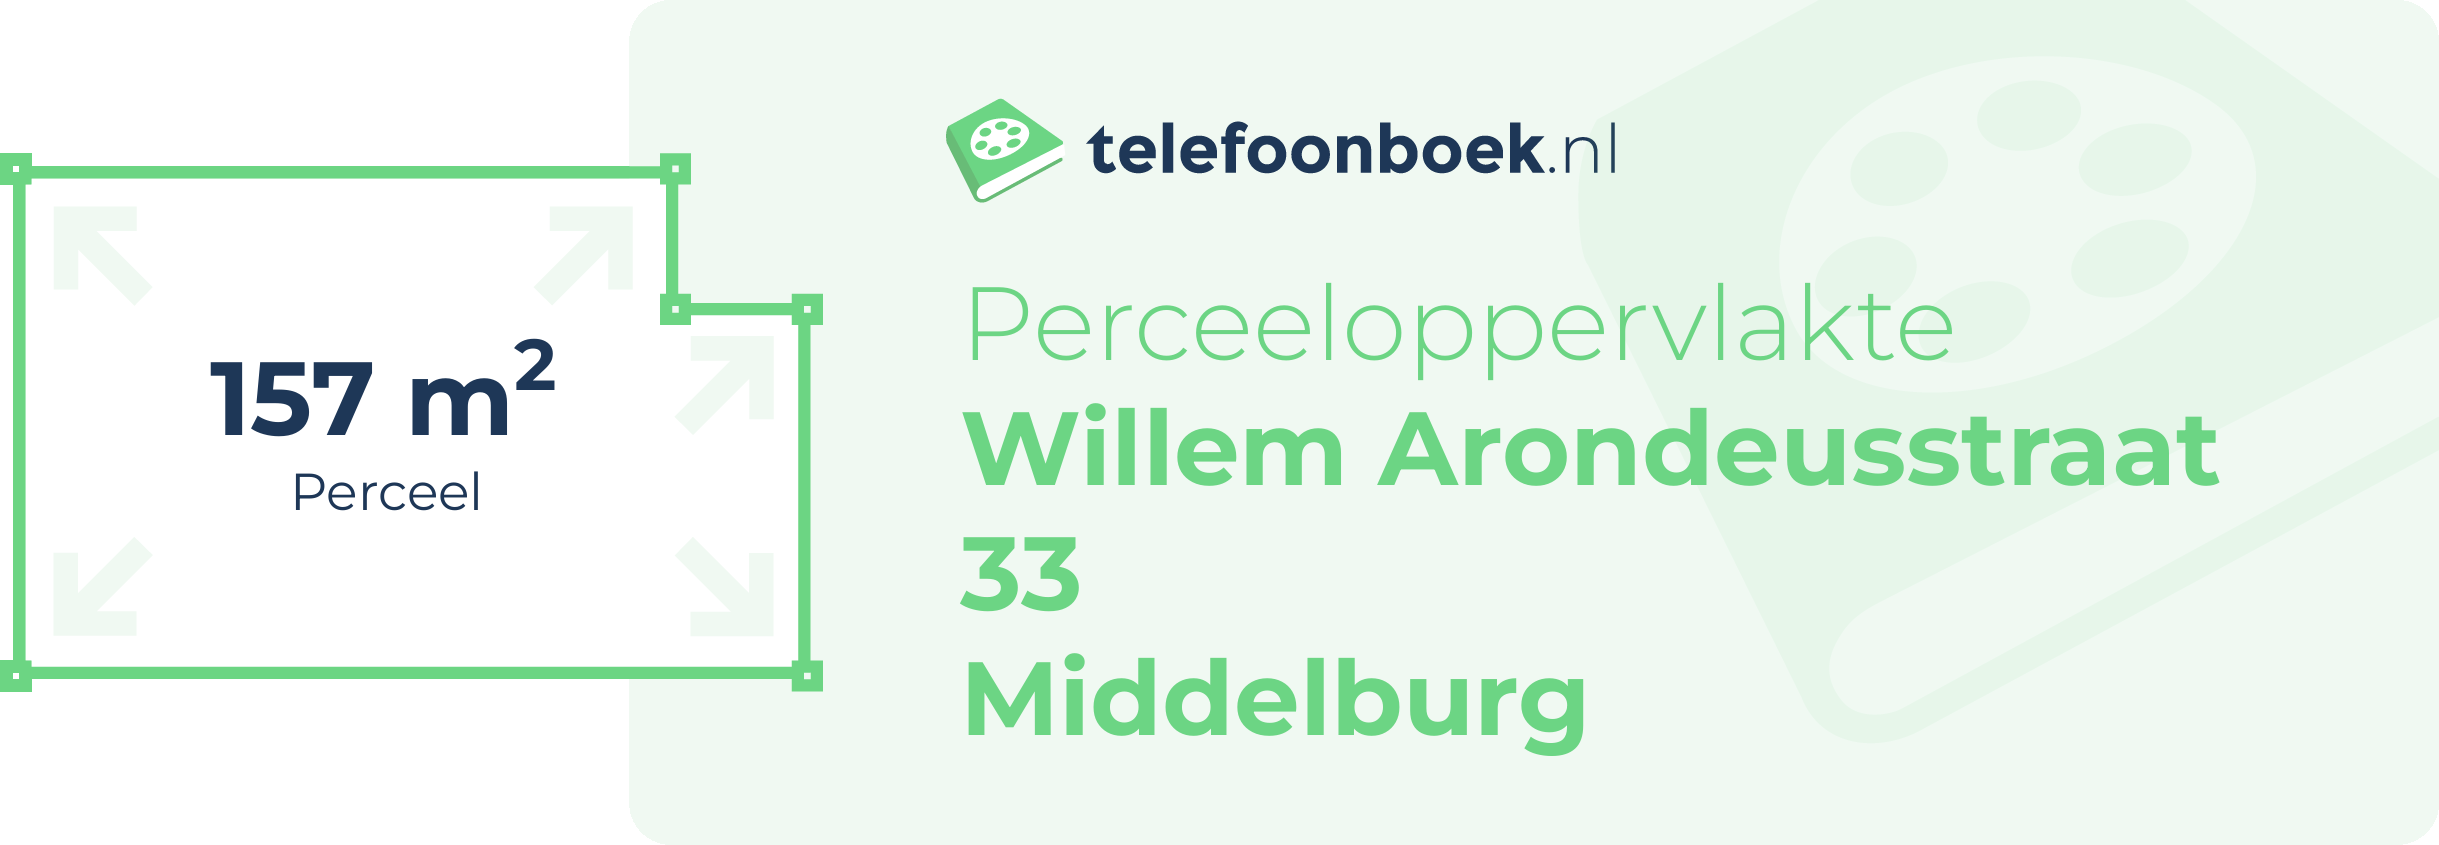 Perceeloppervlakte Willem Arondeusstraat 33 Middelburg